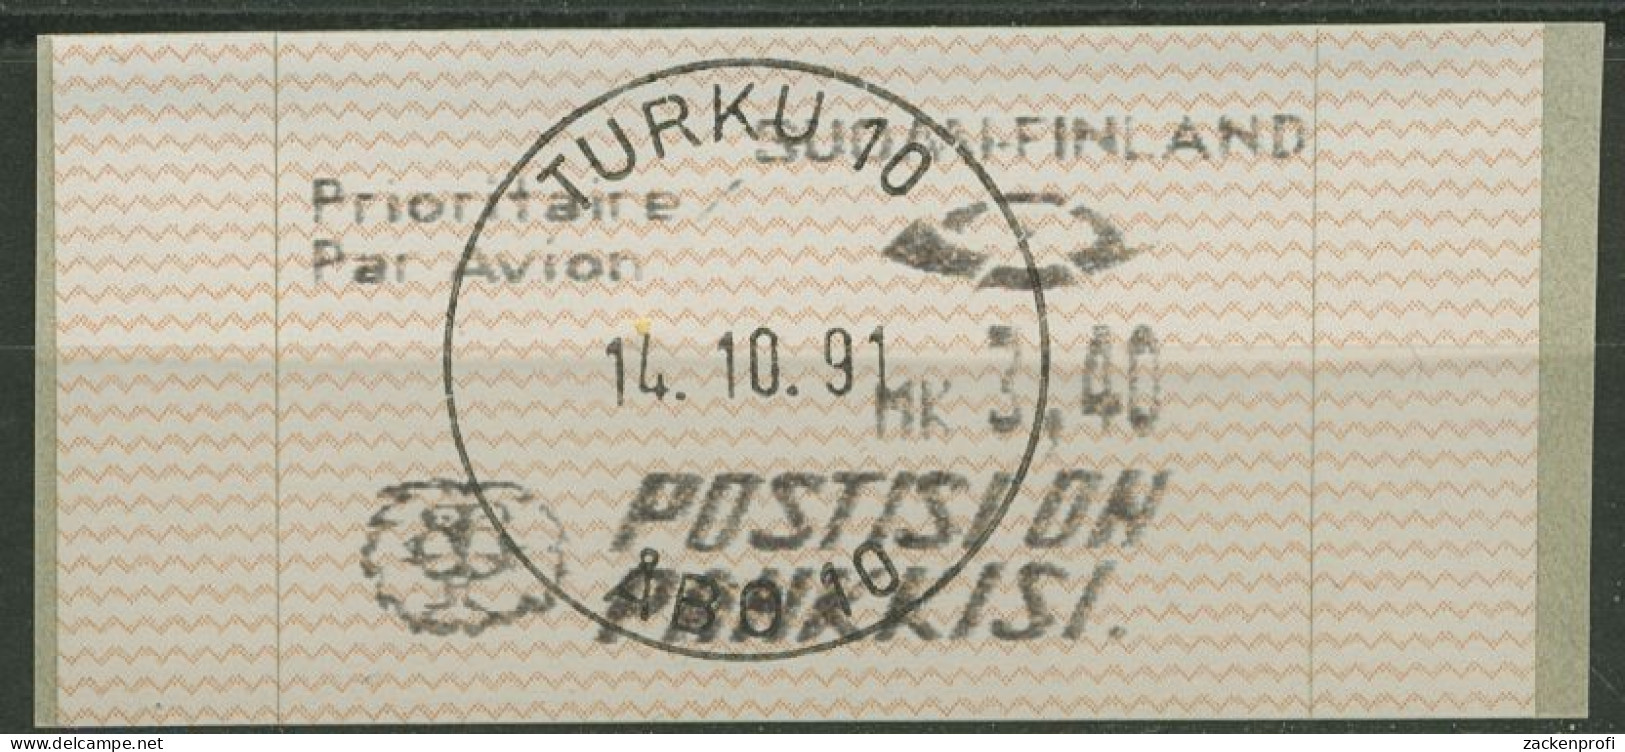 Finnland Automatenmarken 1991 3,40 MK Einzelwert, ATM 10.2 Z 6 Gestempelt - Automaatzegels [ATM]